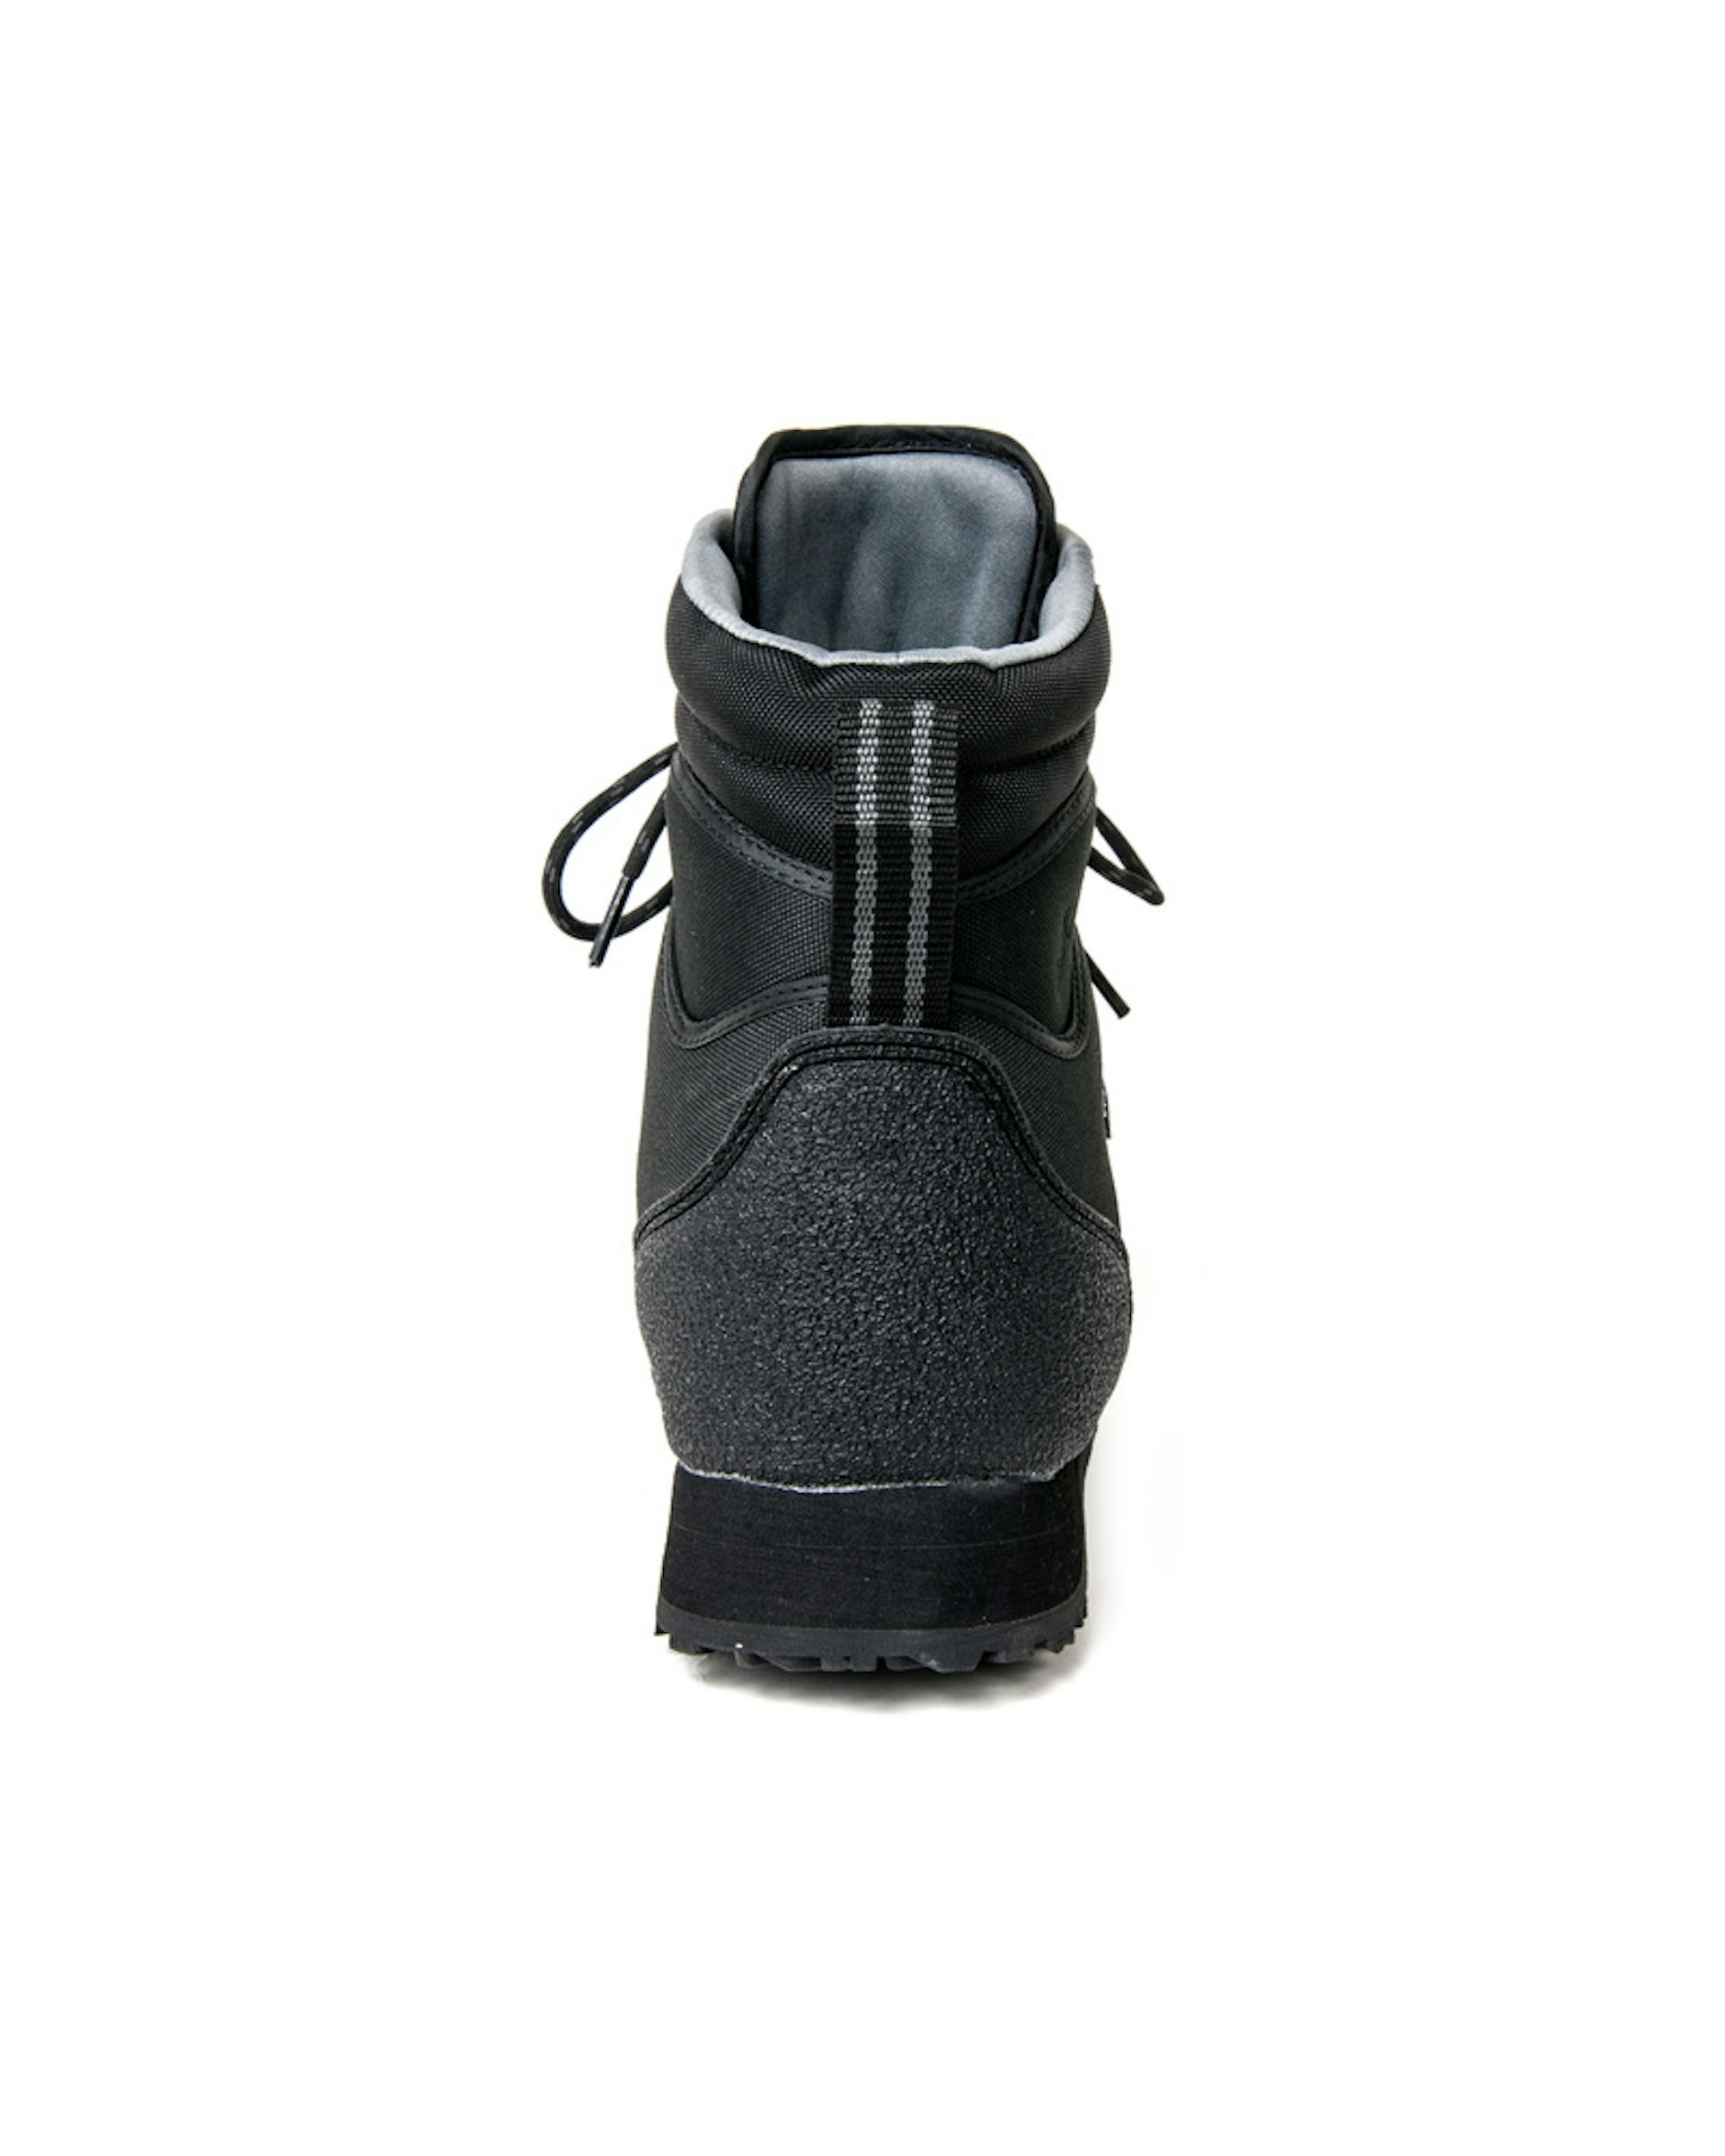 Kaitum Boot Rubber Sole US9/EUR42/UK8 (bild 3 av 3)